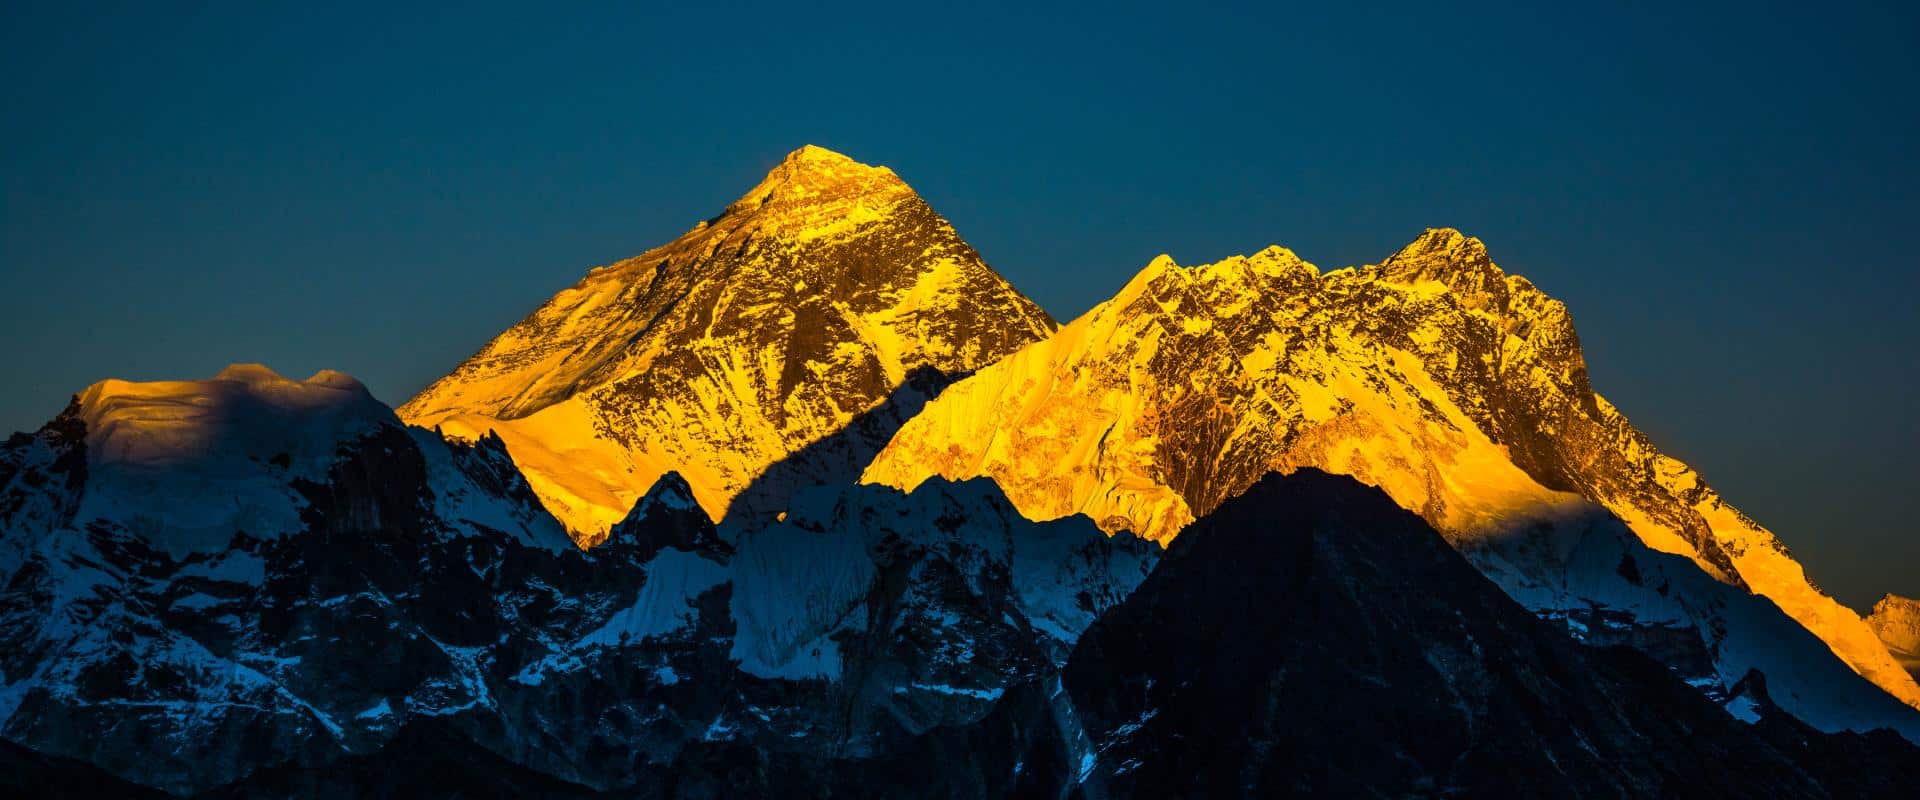 Mount Everest Base Camp Trek | EBC Trek